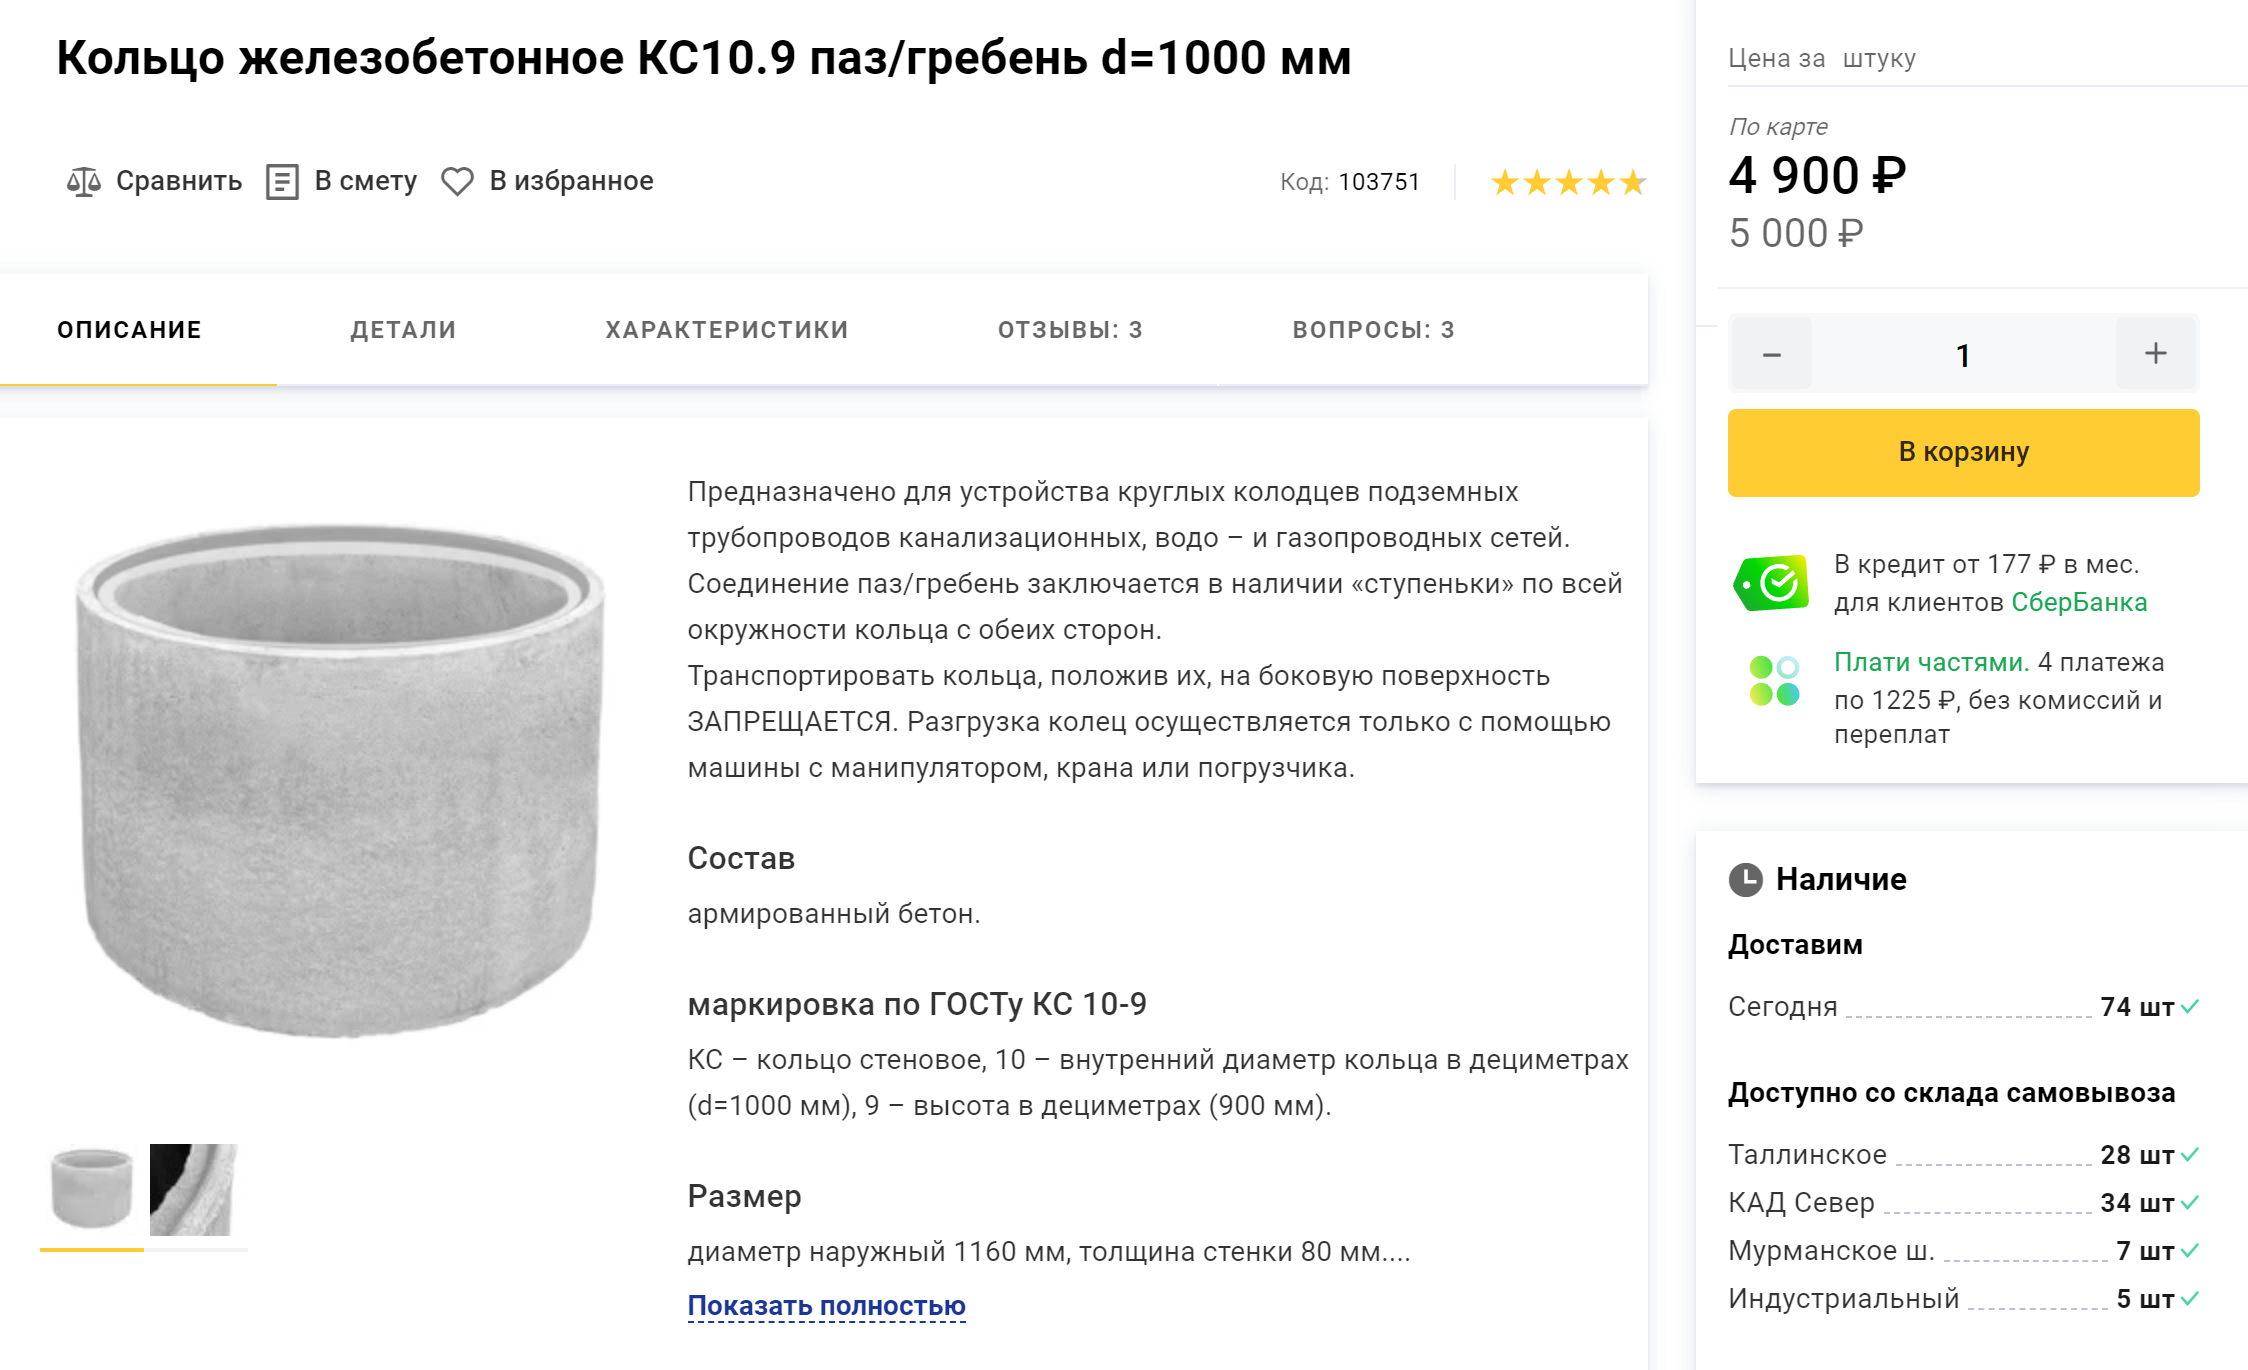 Чаще всего для строительства колодцев используют железобетонные кольца КС10.9 с пазогребневым соединением. Внутренний диаметр такого кольца — 1 м, высота — 0,9 м, объем — около 700 л воды. Цена — около 5000 ₽. Источник: petrovich.ru